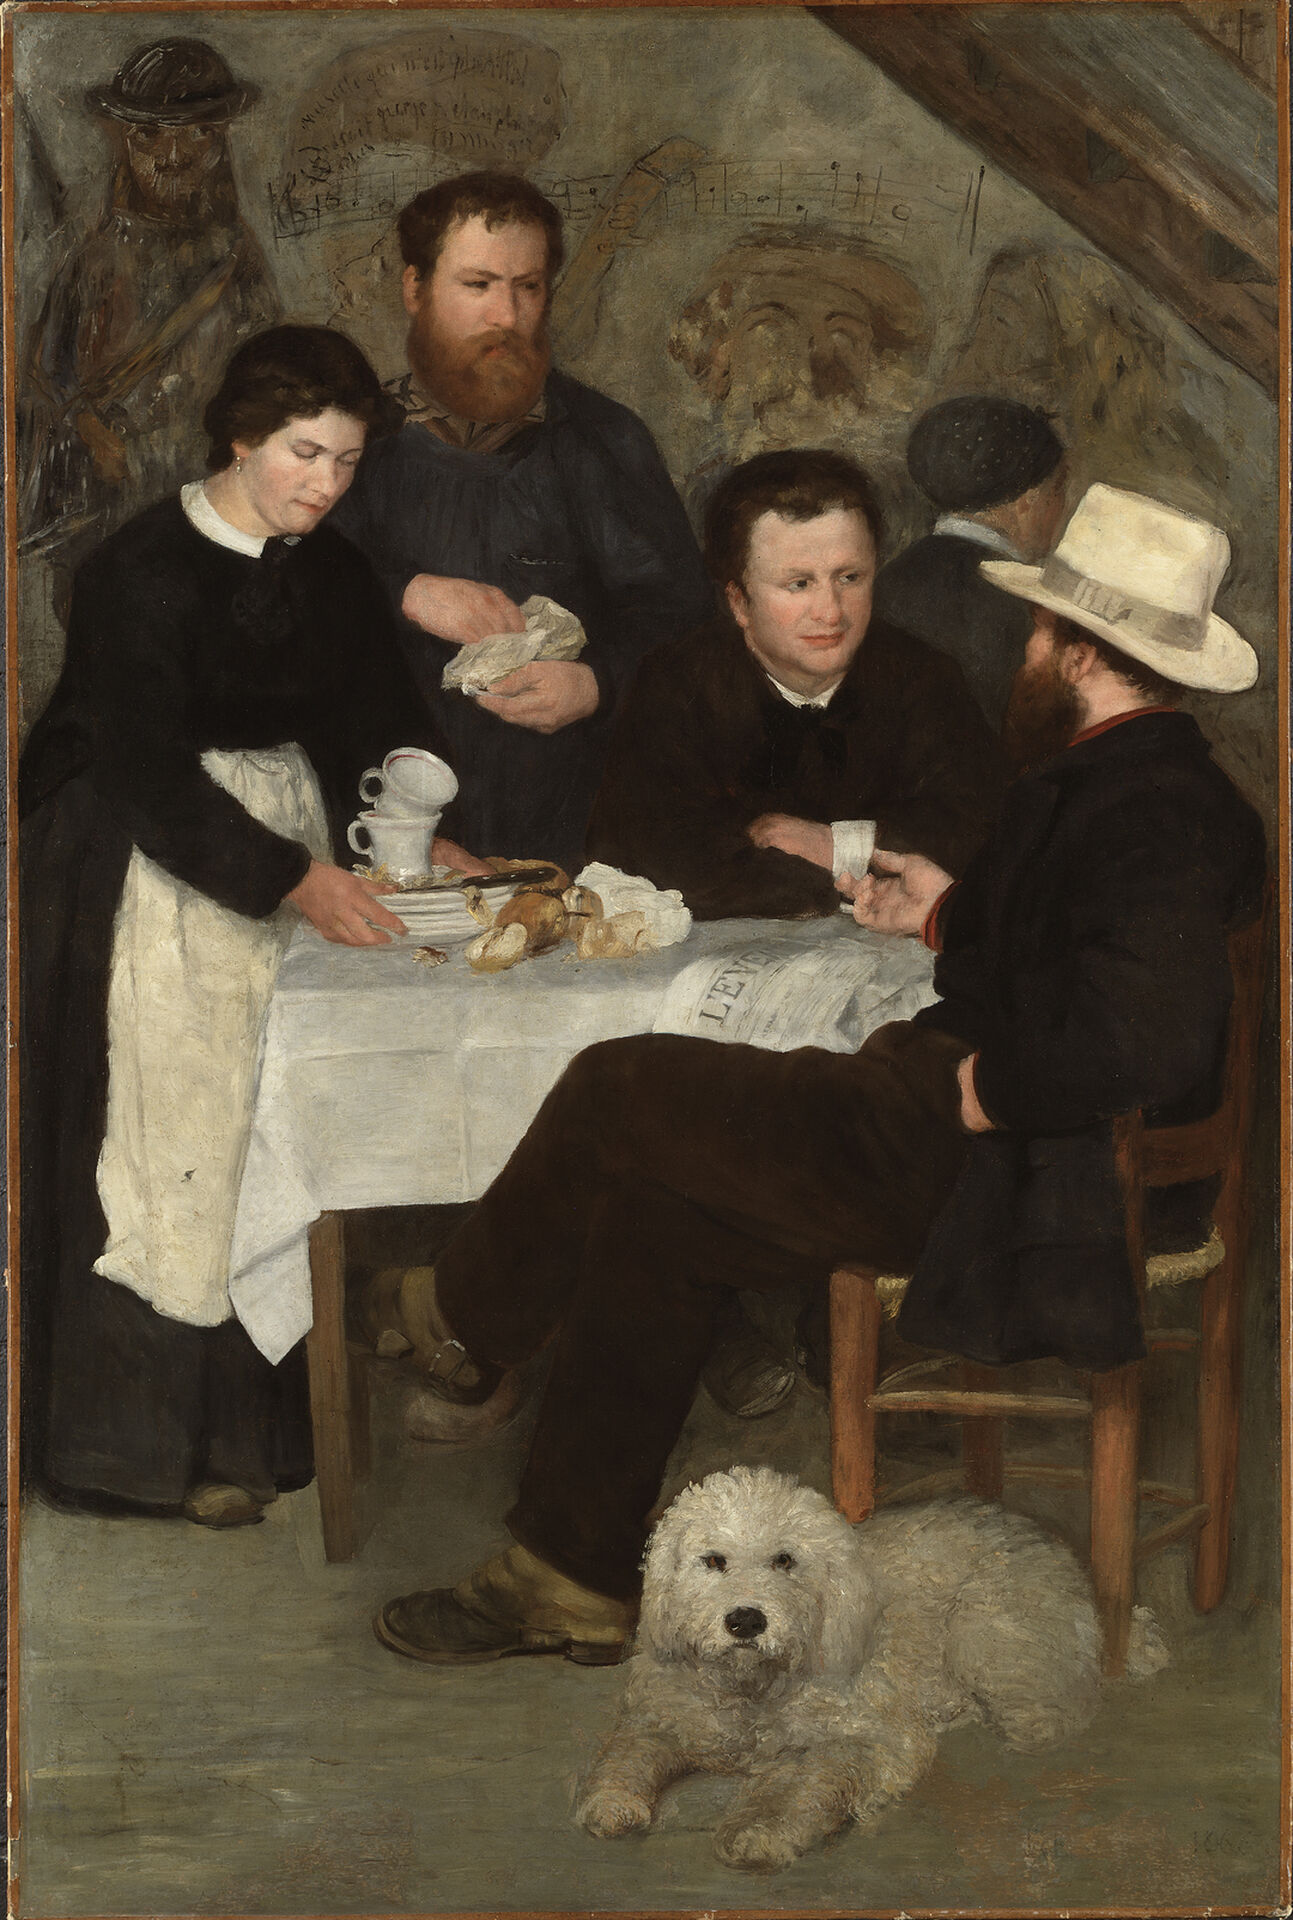 Auguste Renoir, I mor Anthonys värdshus